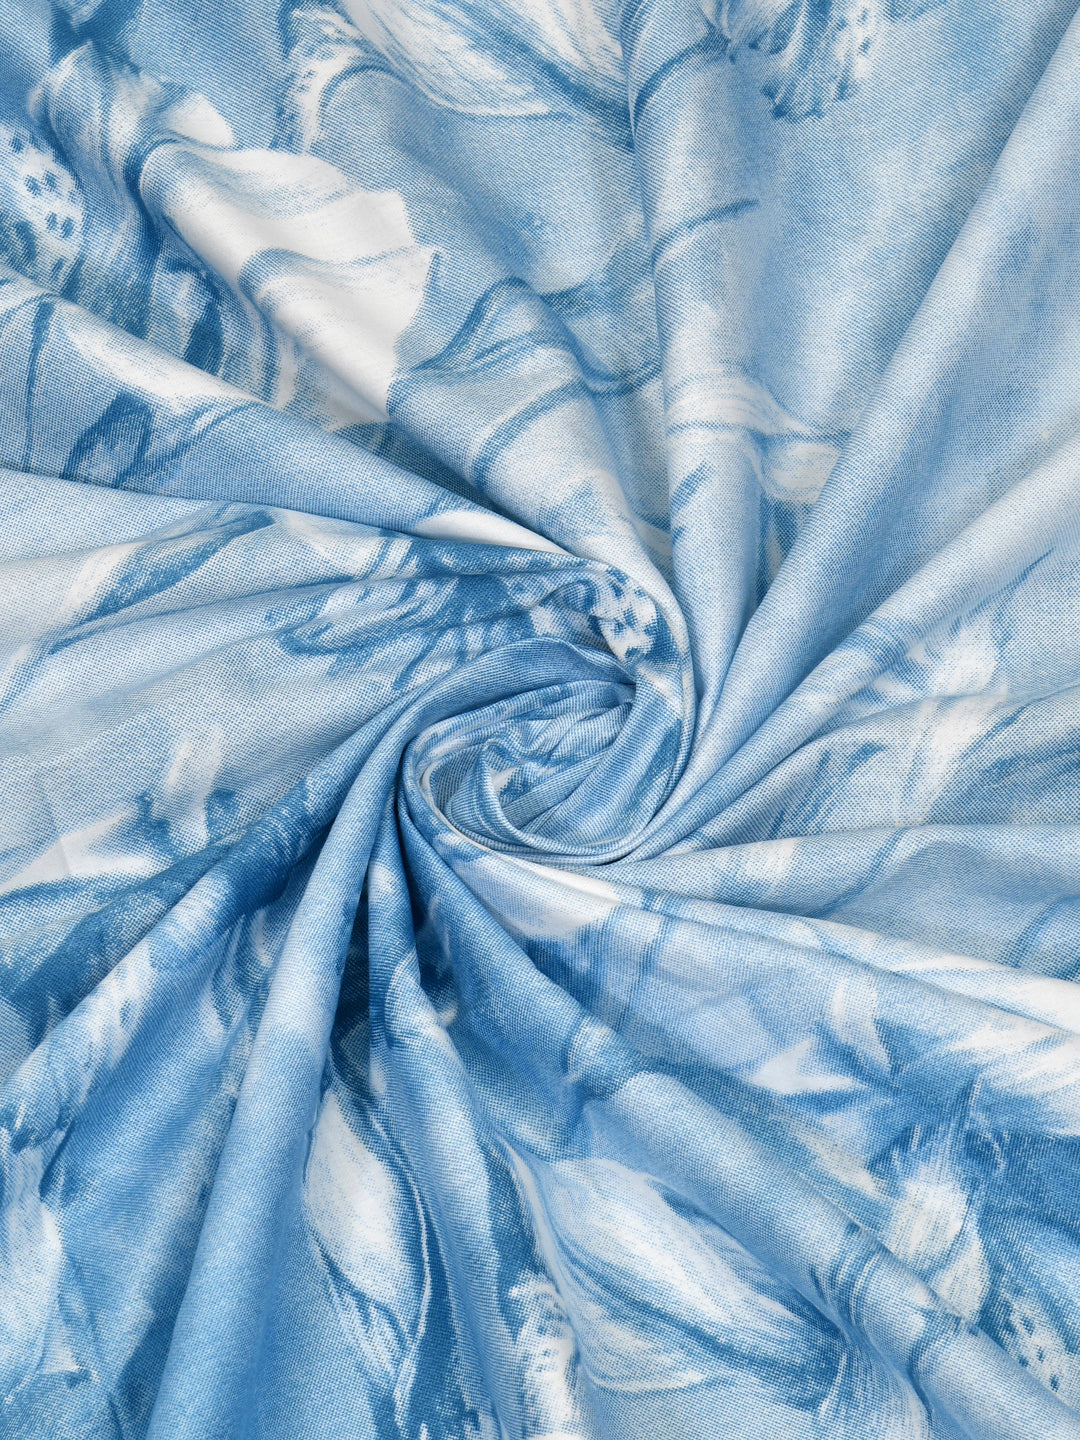 Blue Flora Print King Size Bed Cotton Linen